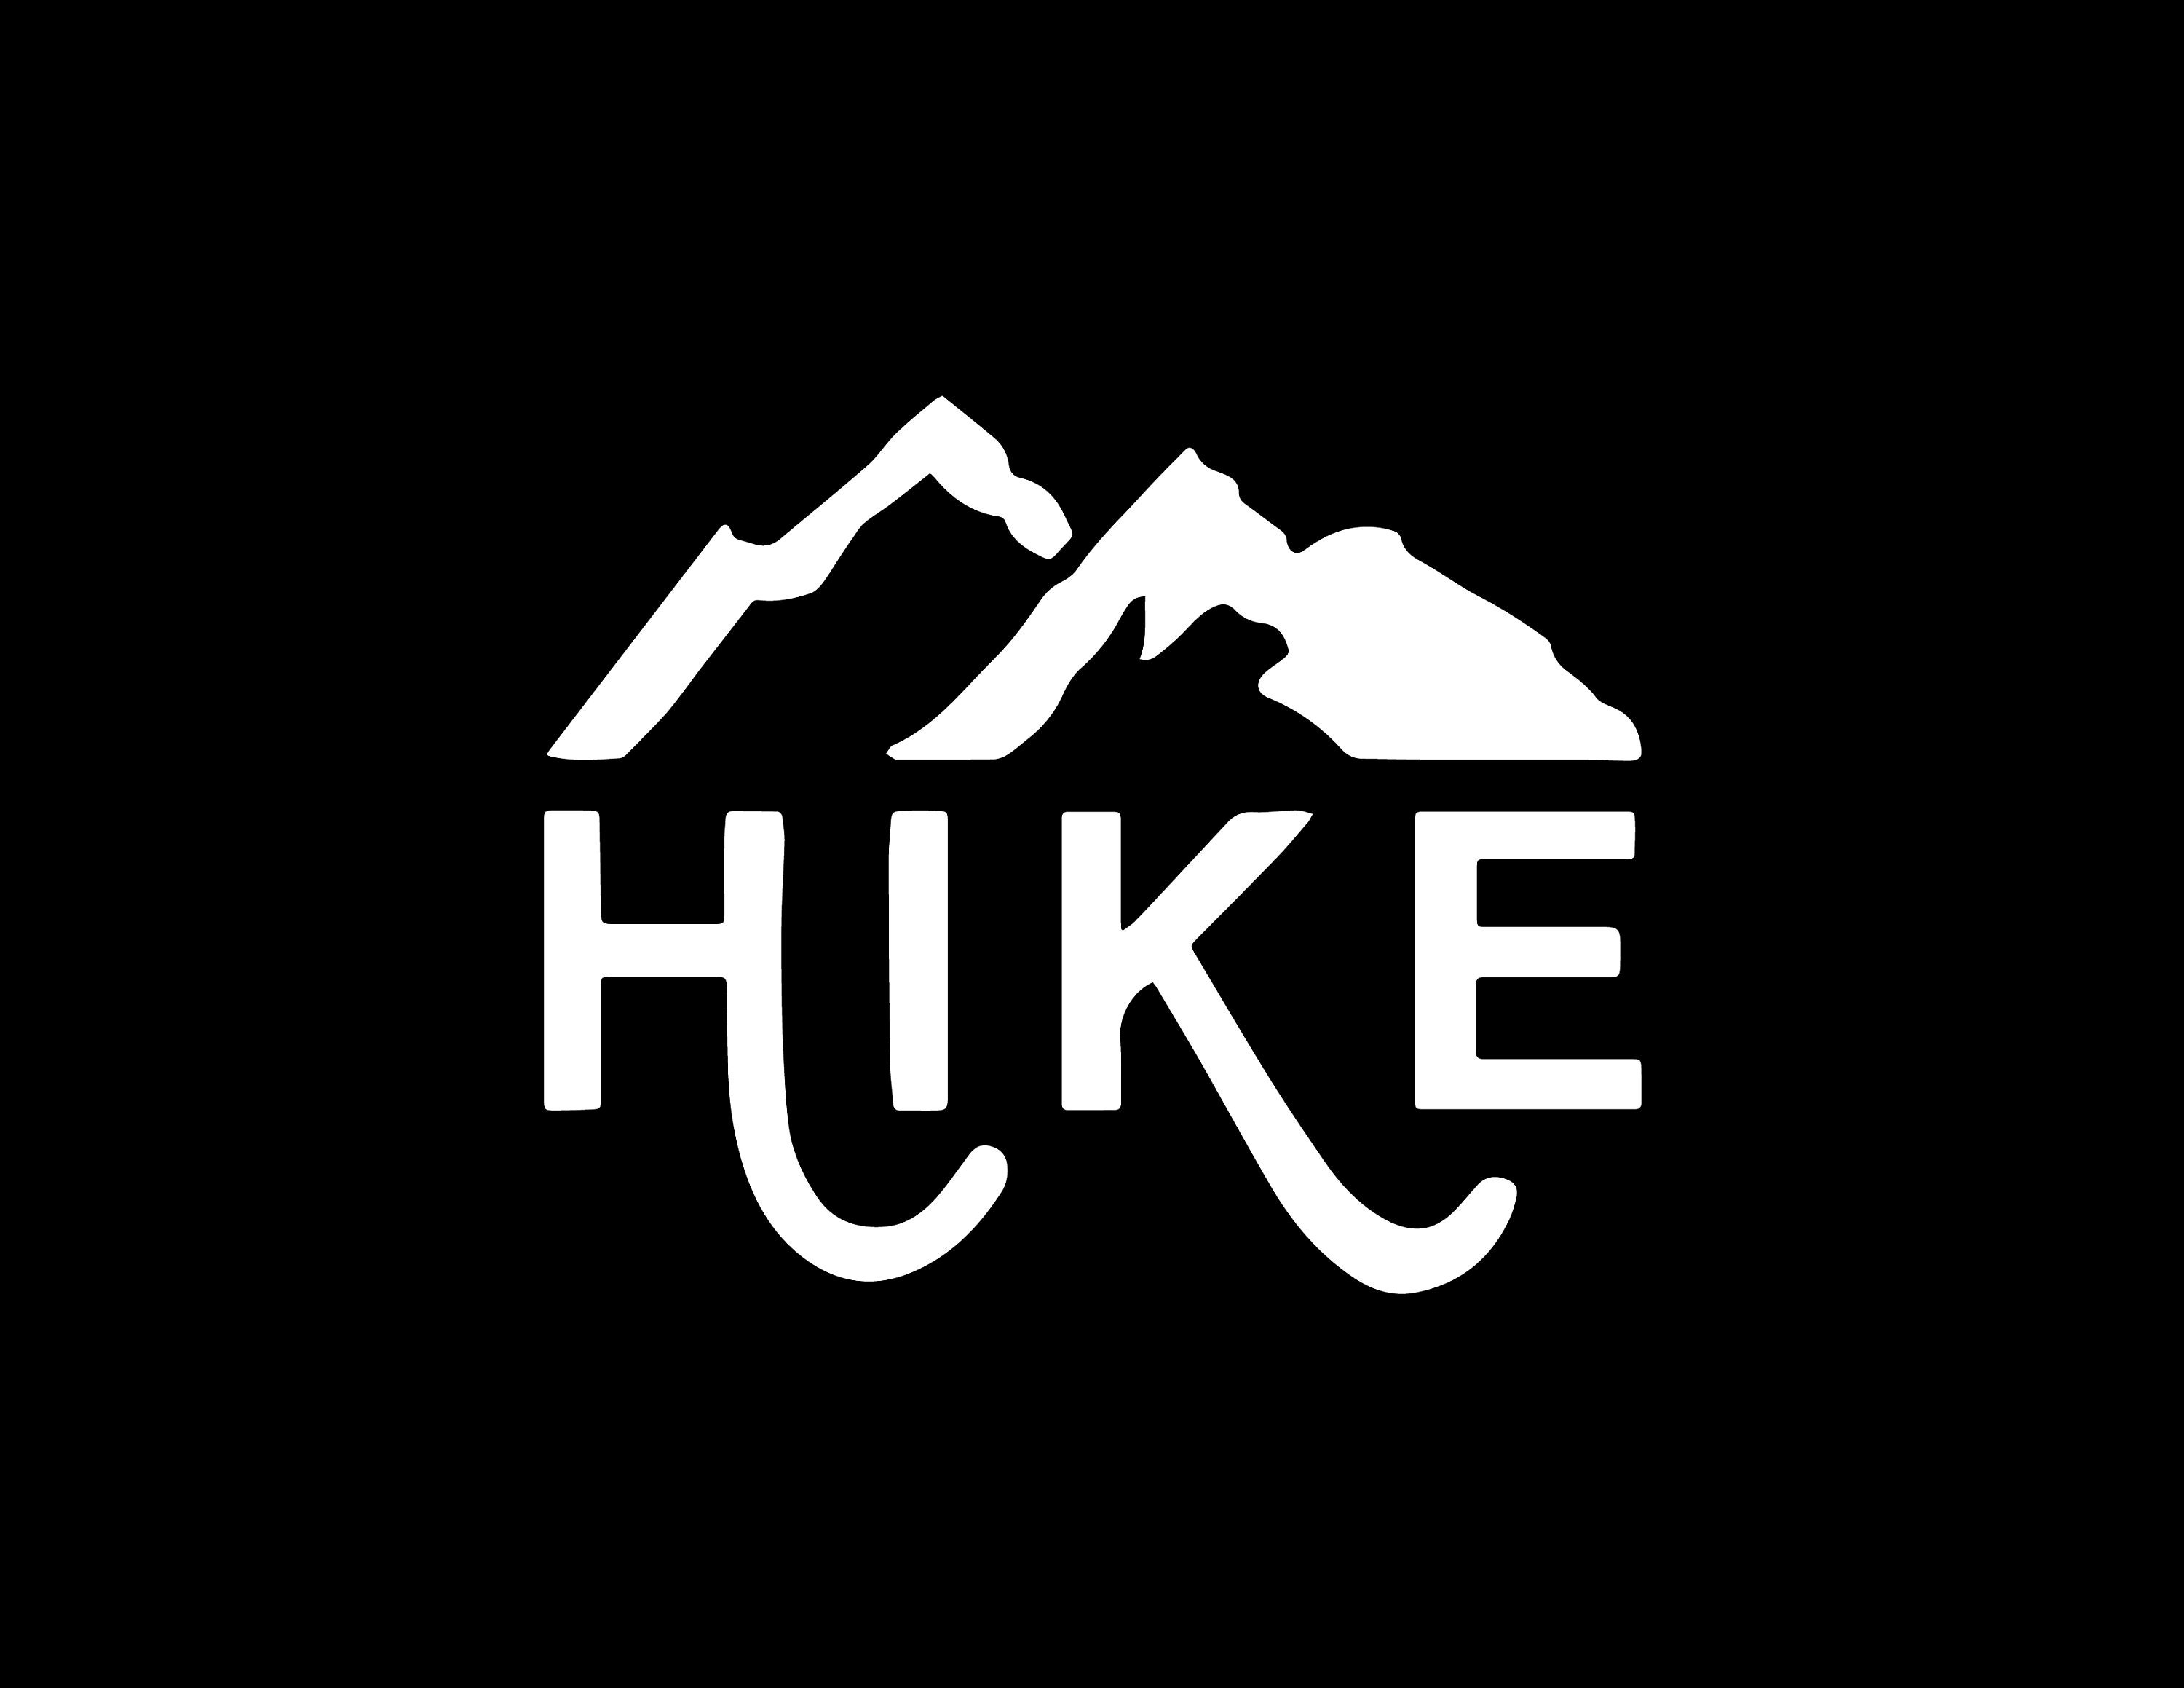 Hike : Hiking SVG Sublimation Designs Instant Download Svg - Etsy